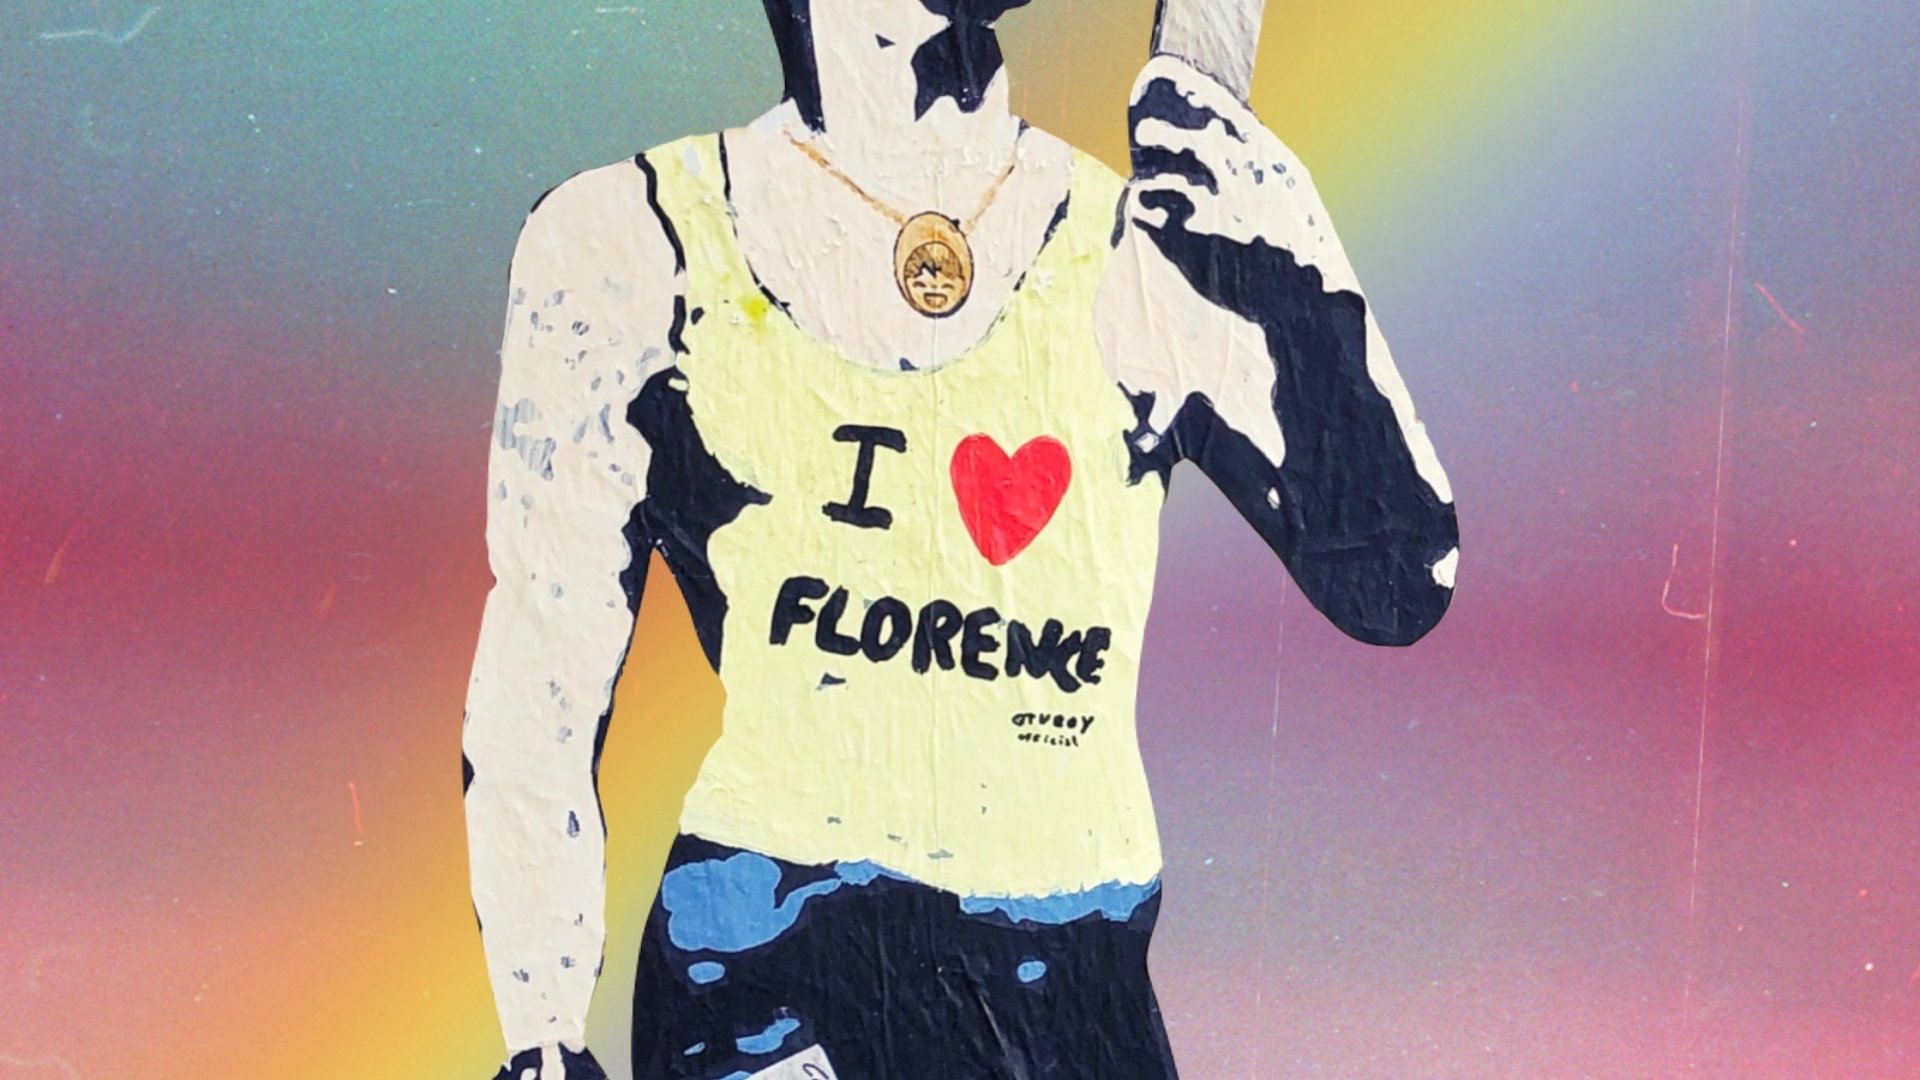 Murale David Firenze LGBTQ